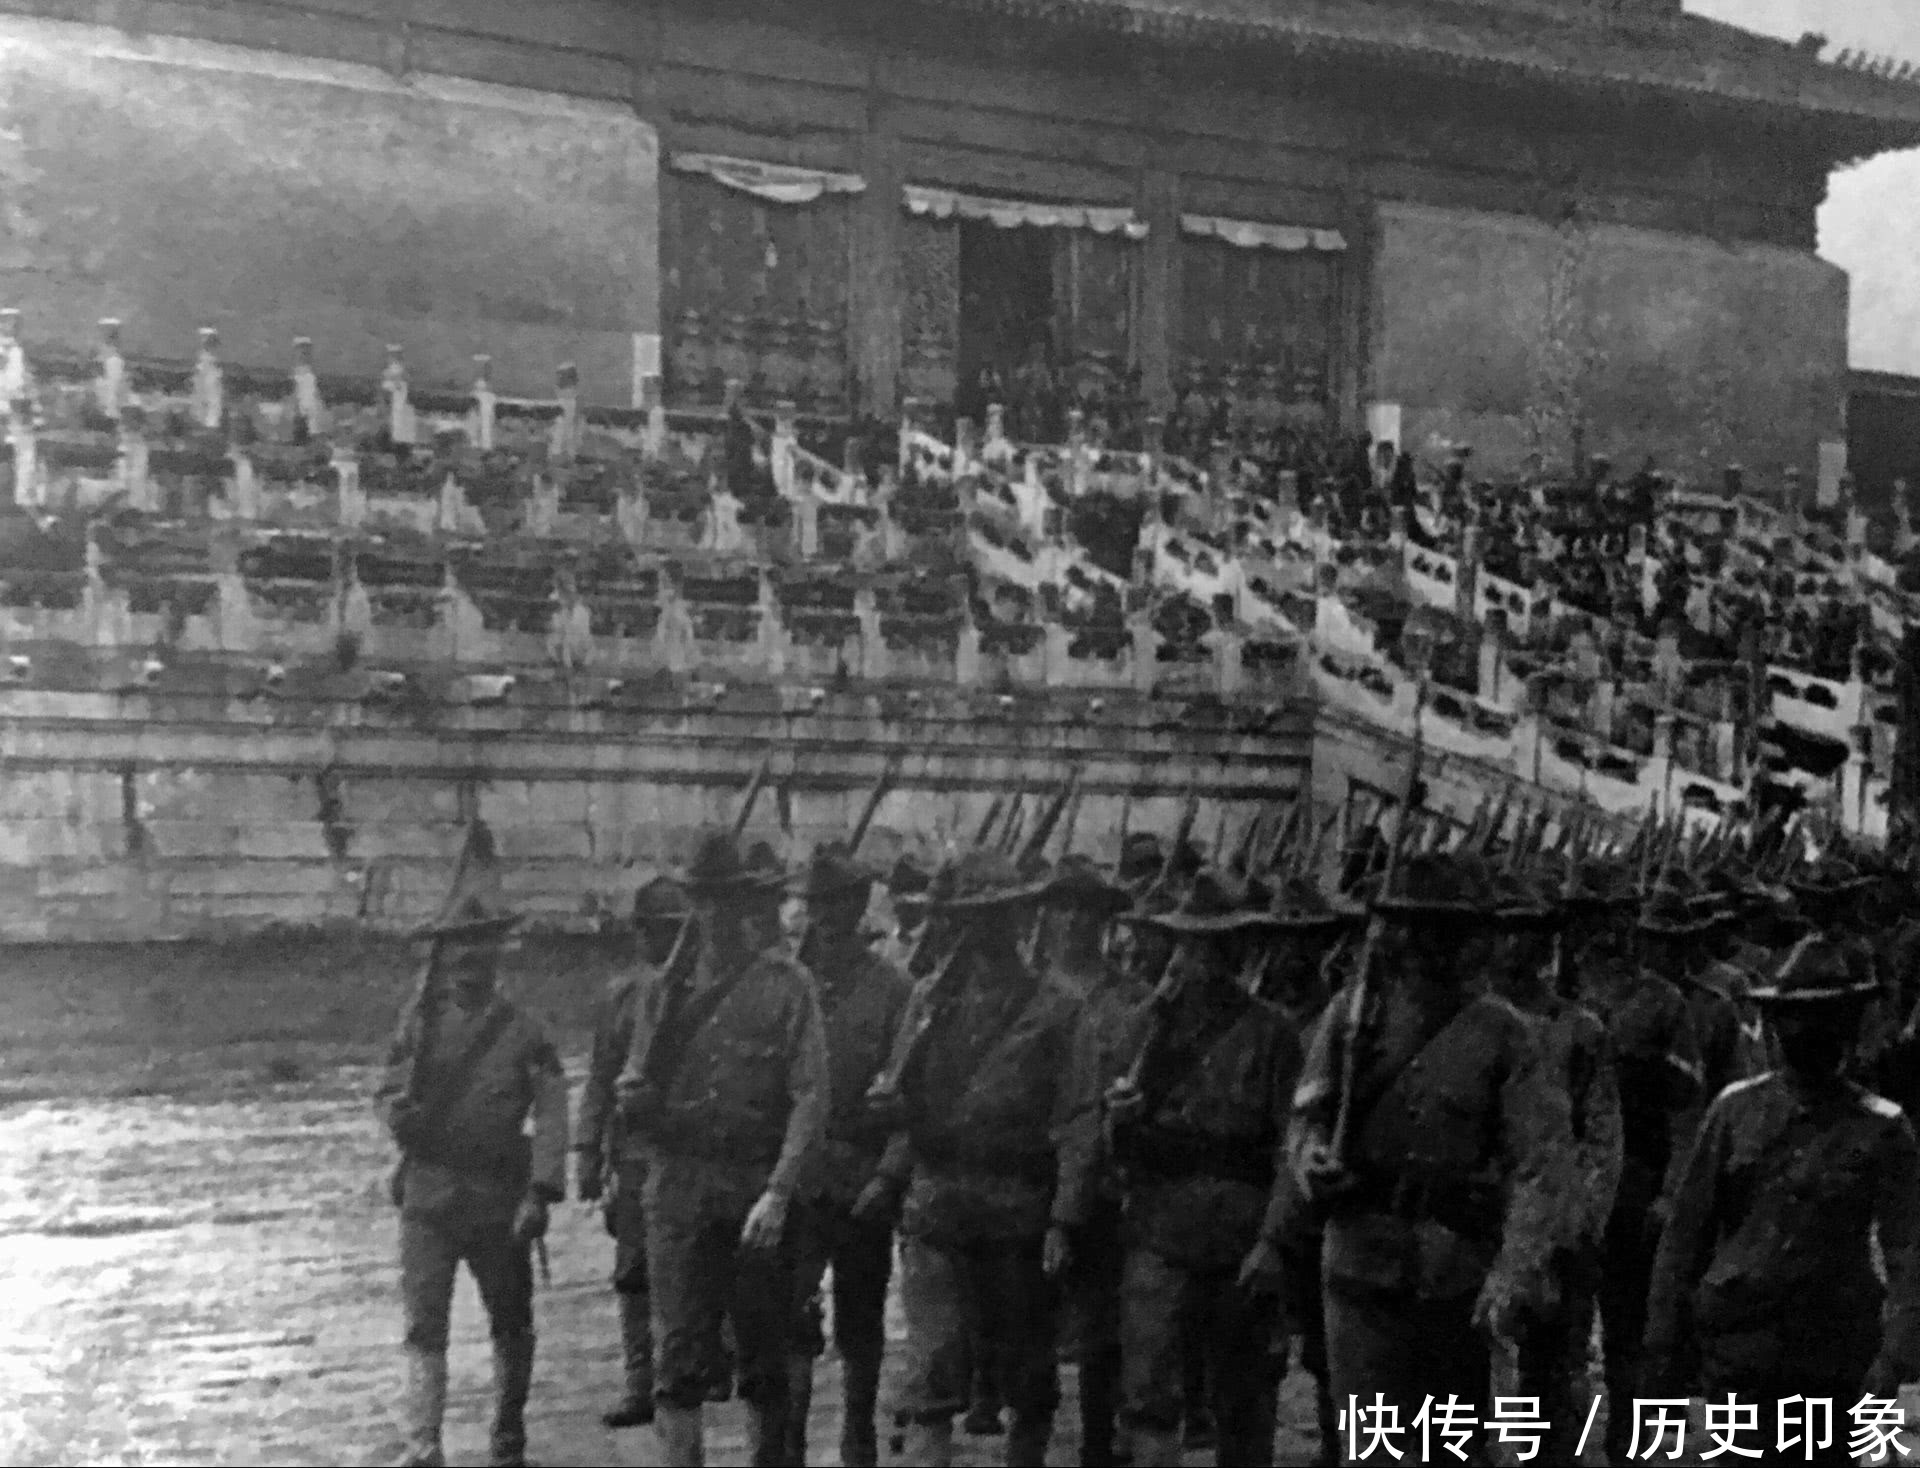 老照片:八国联军攻入紫禁城 晚清的衰败与迎来